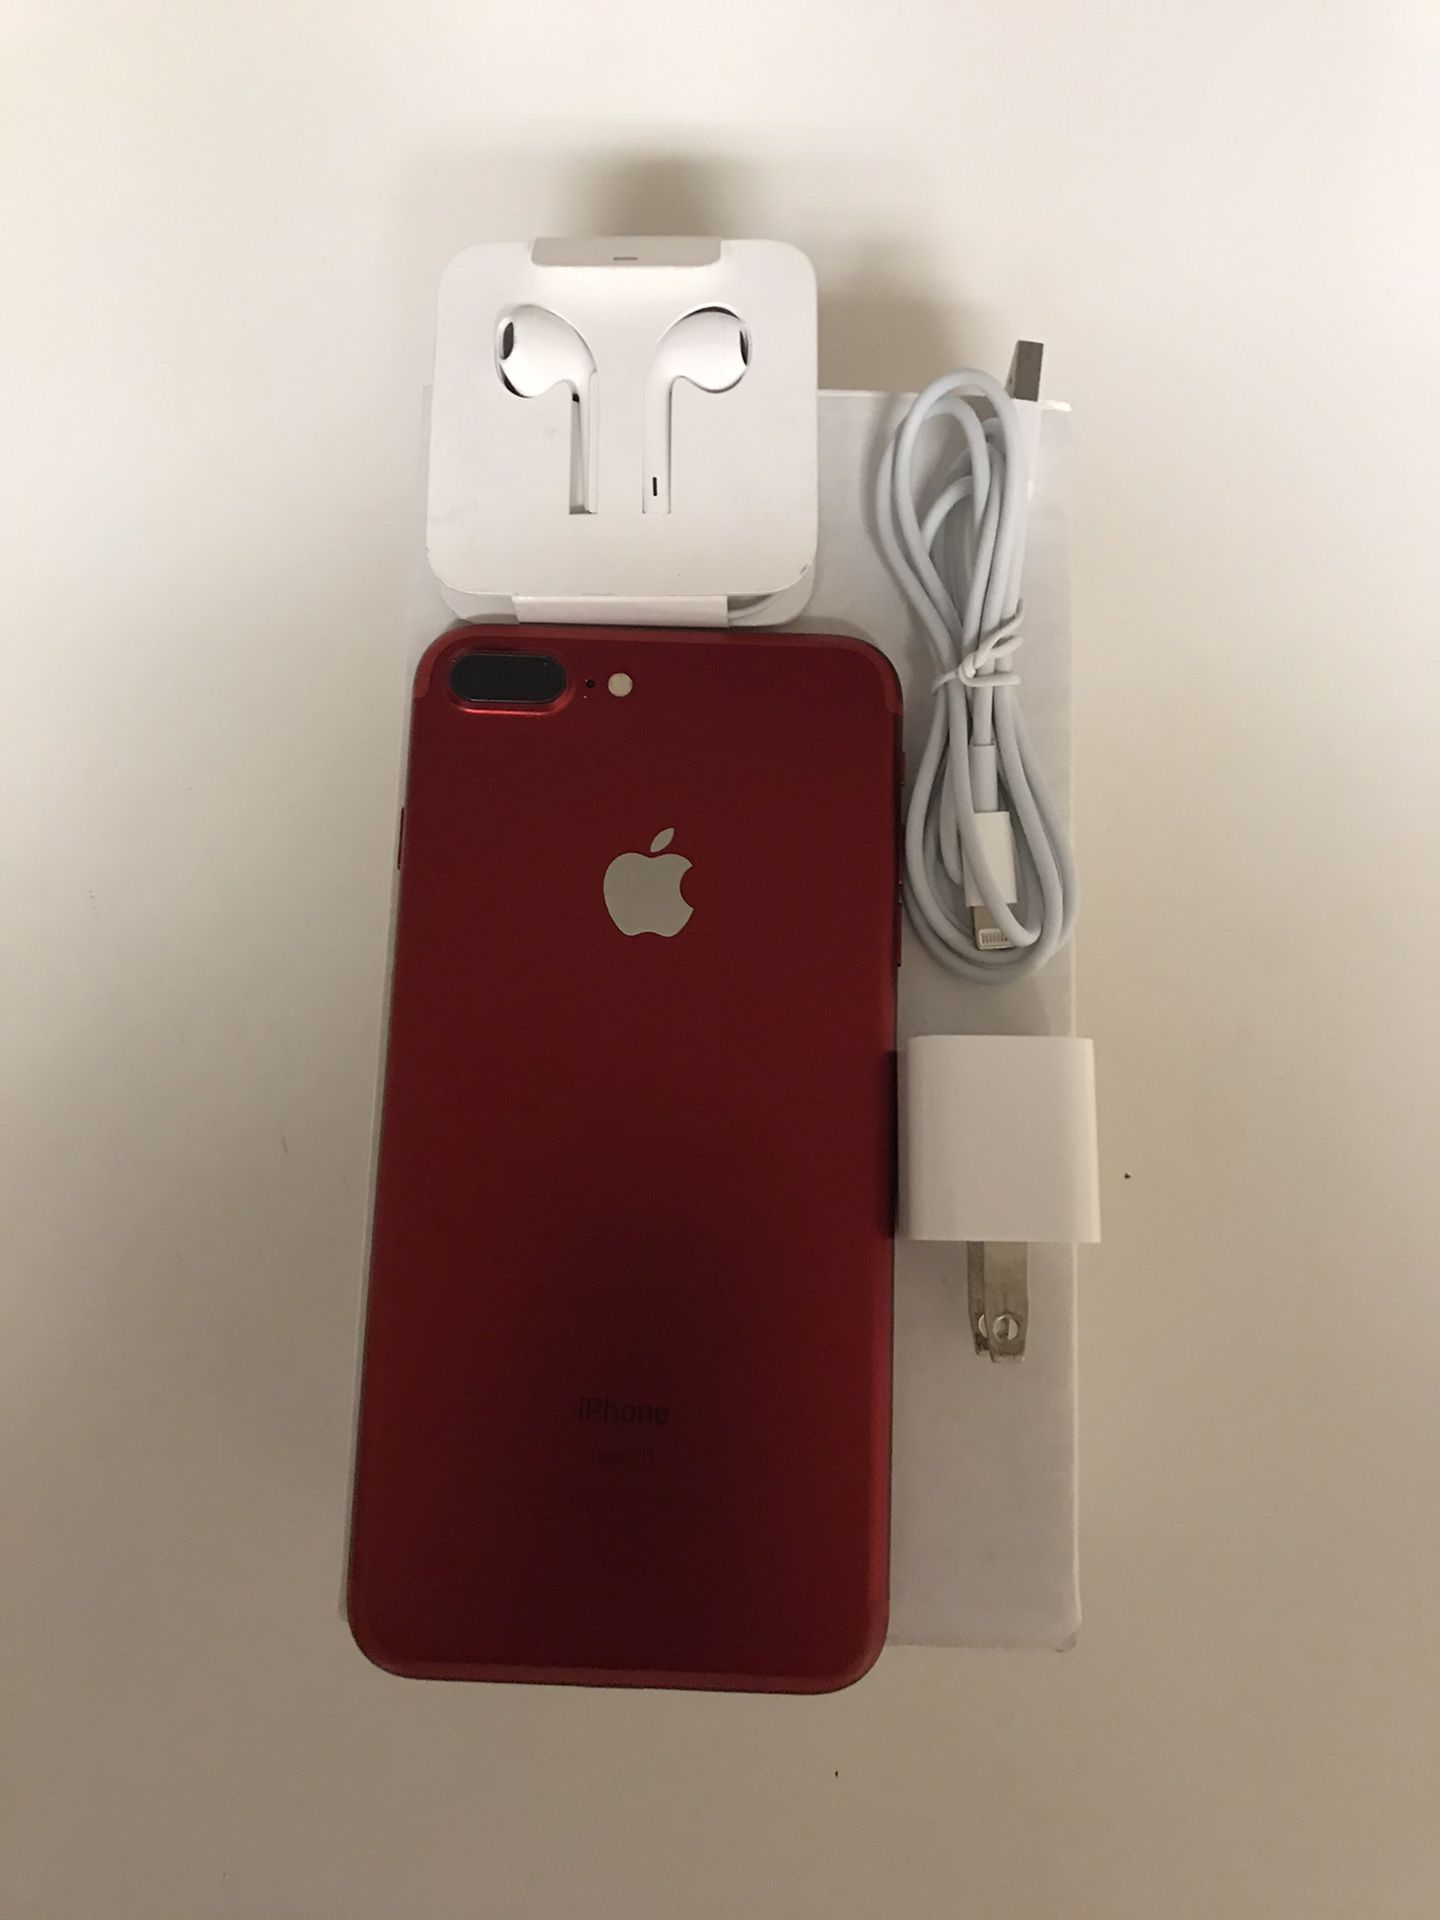 iPhone 7 Plus red 128gb ATT